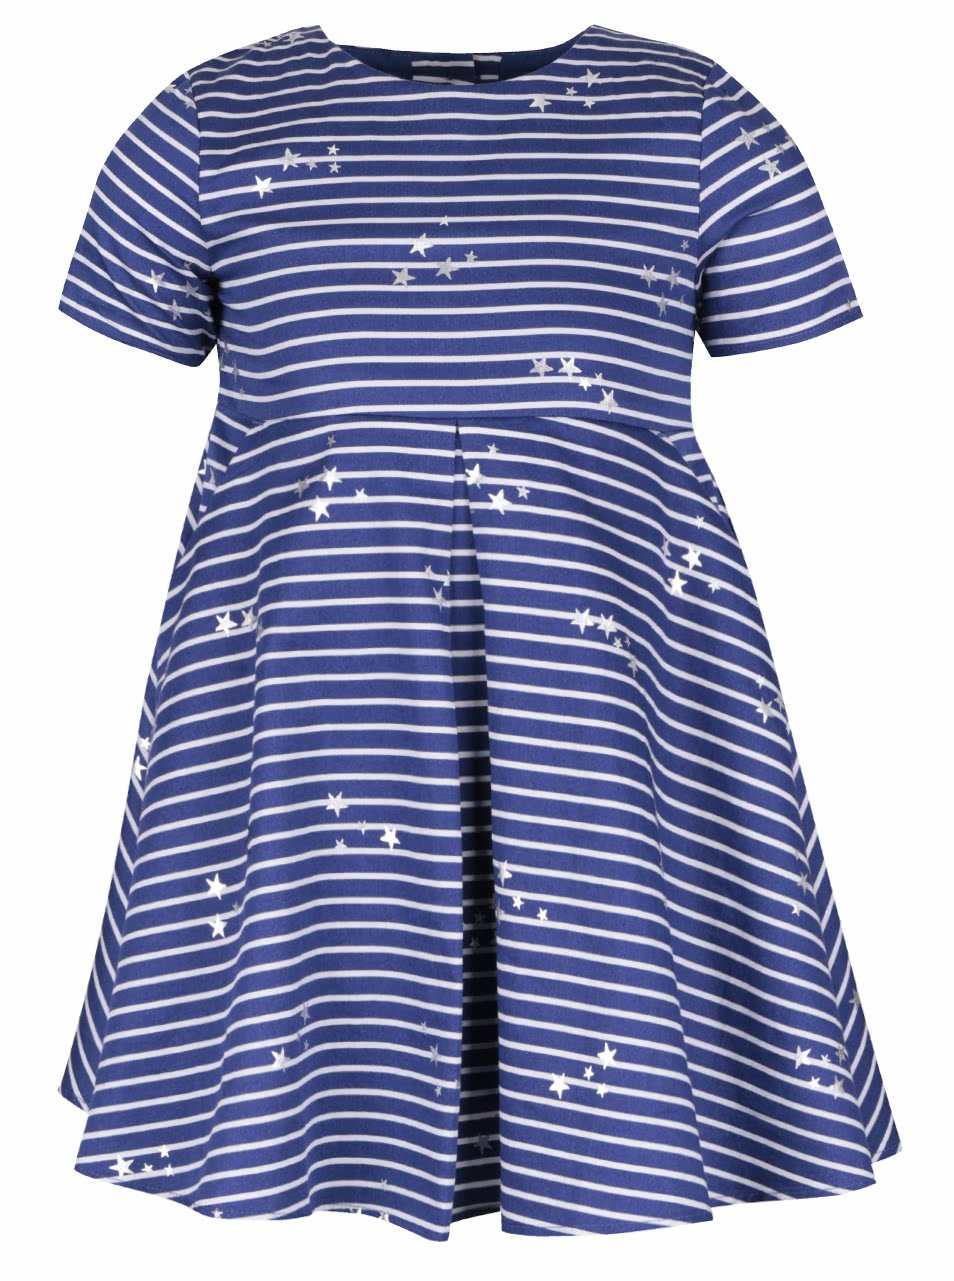 Modré holčičí pruhované šaty s potiskem hvězd Tom Joule Constance